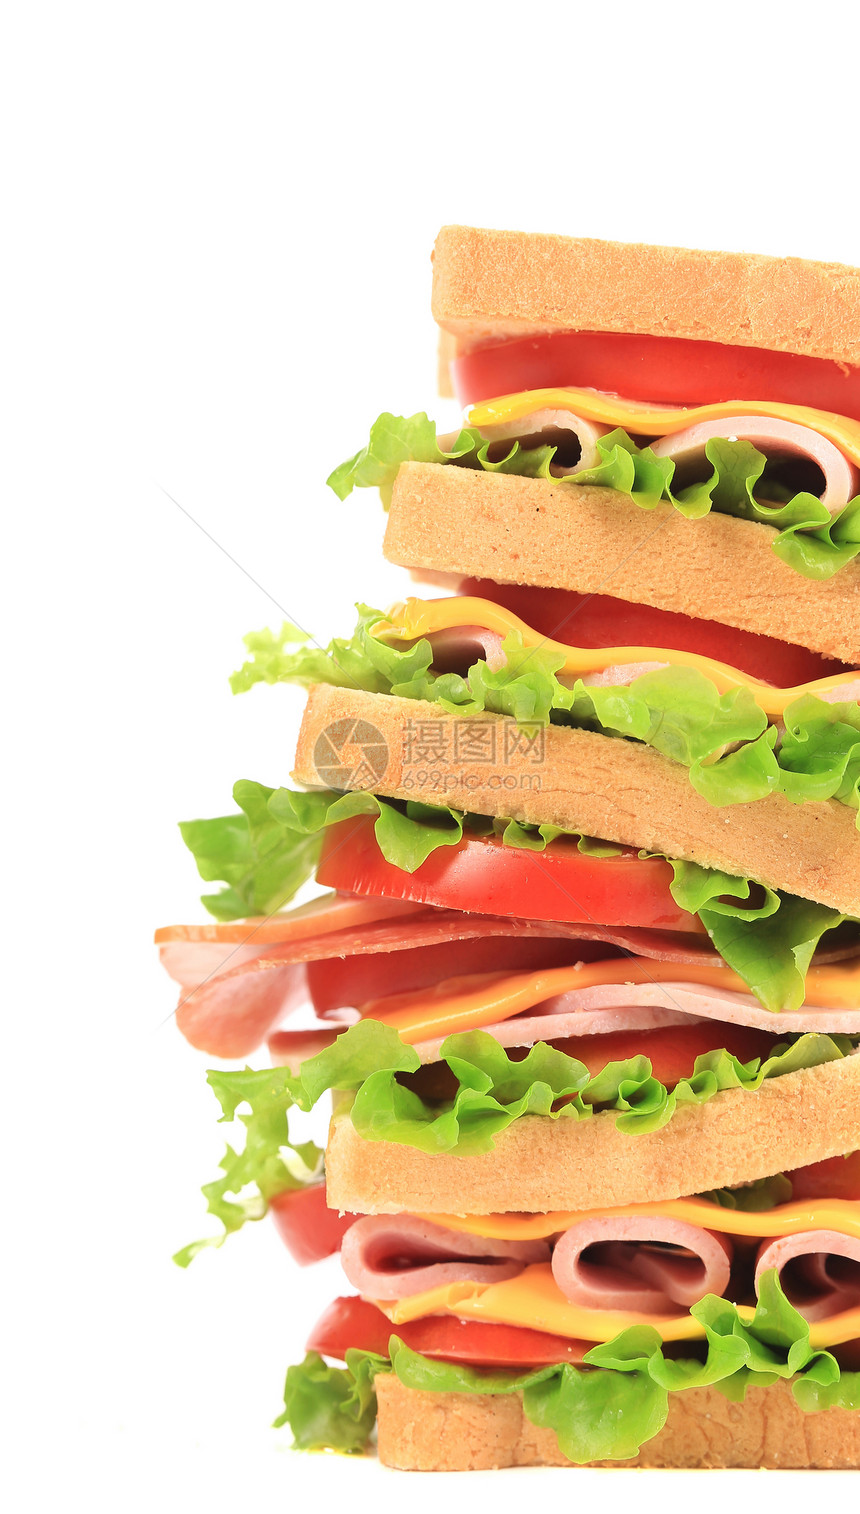 大三明治和新鲜蔬菜熏制沙拉小吃芝麻火腿种子食物面包垃圾家禽图片